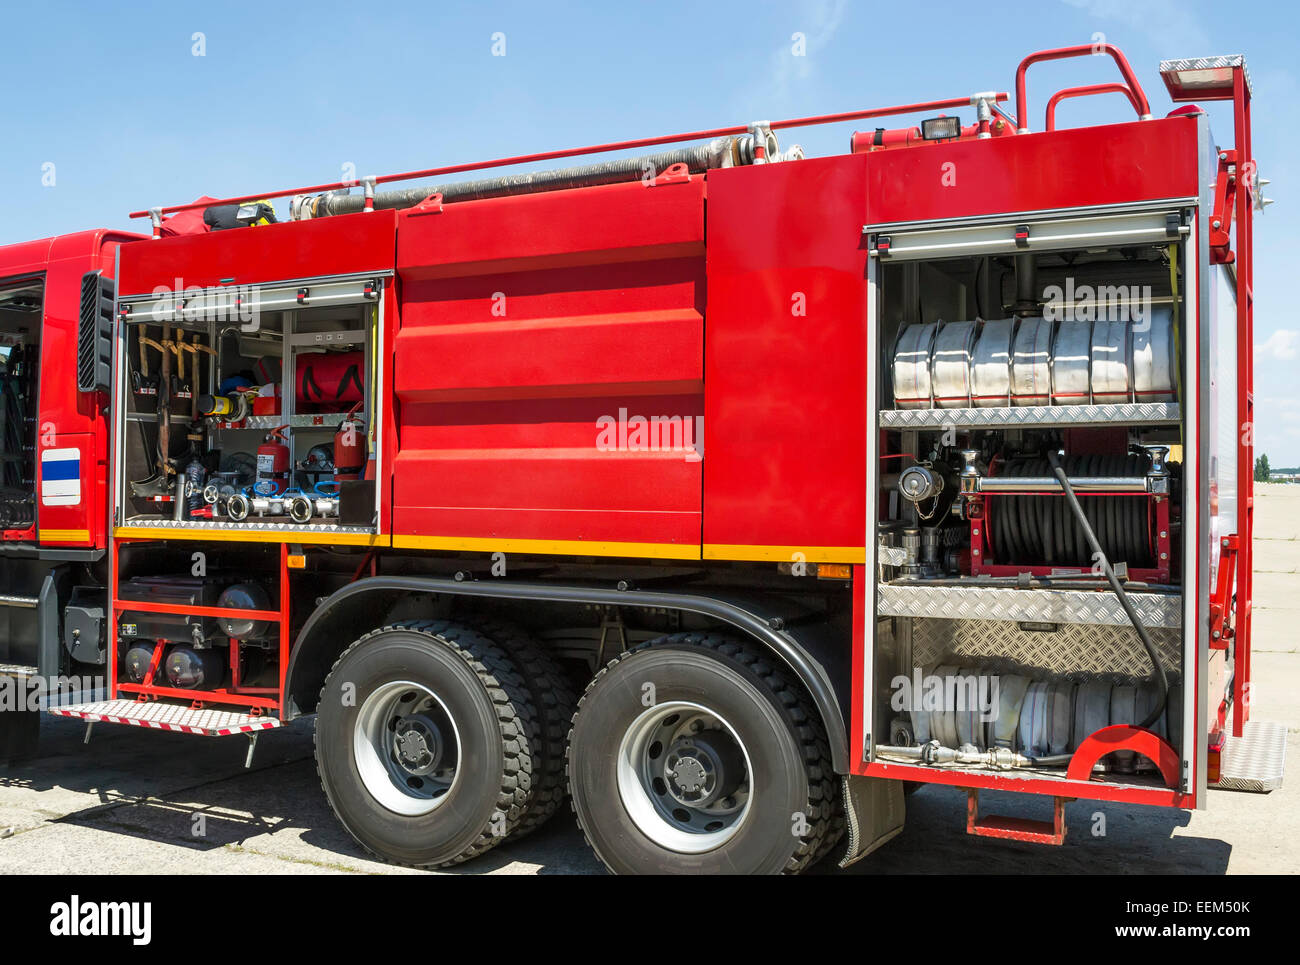 Geräte zur Brandbekämpfung installiert auf einem modernen Feuerwehrauto Stockfoto